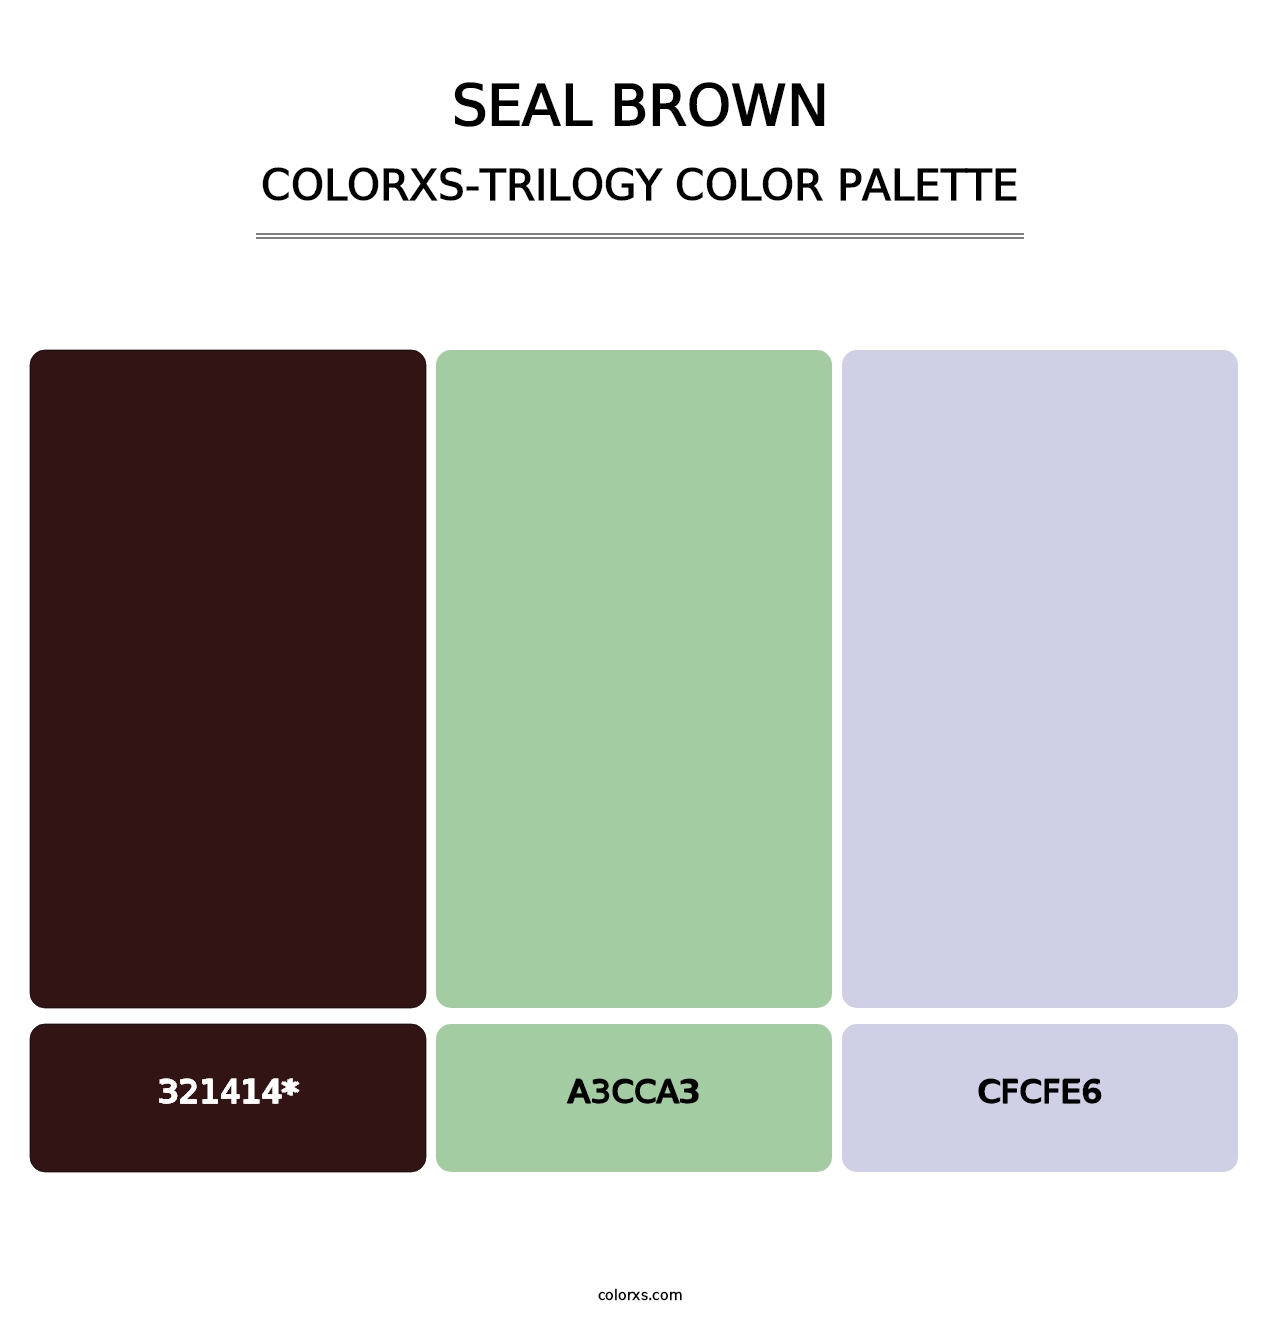 Seal brown - Colorxs Trilogy Palette